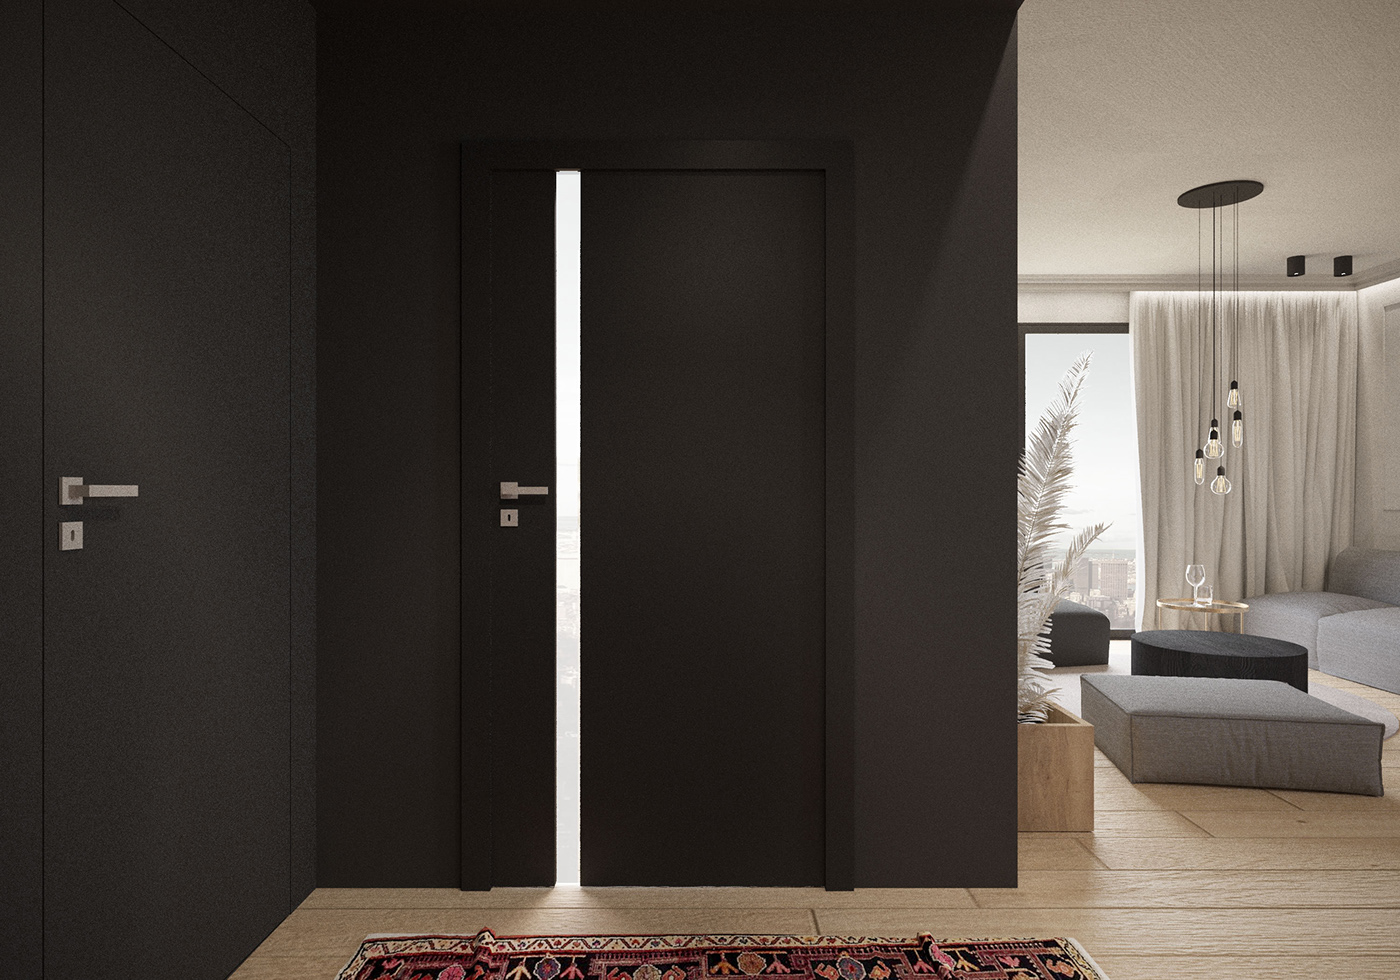 bathroom design Minimalism vola Interior architecture highend luxury